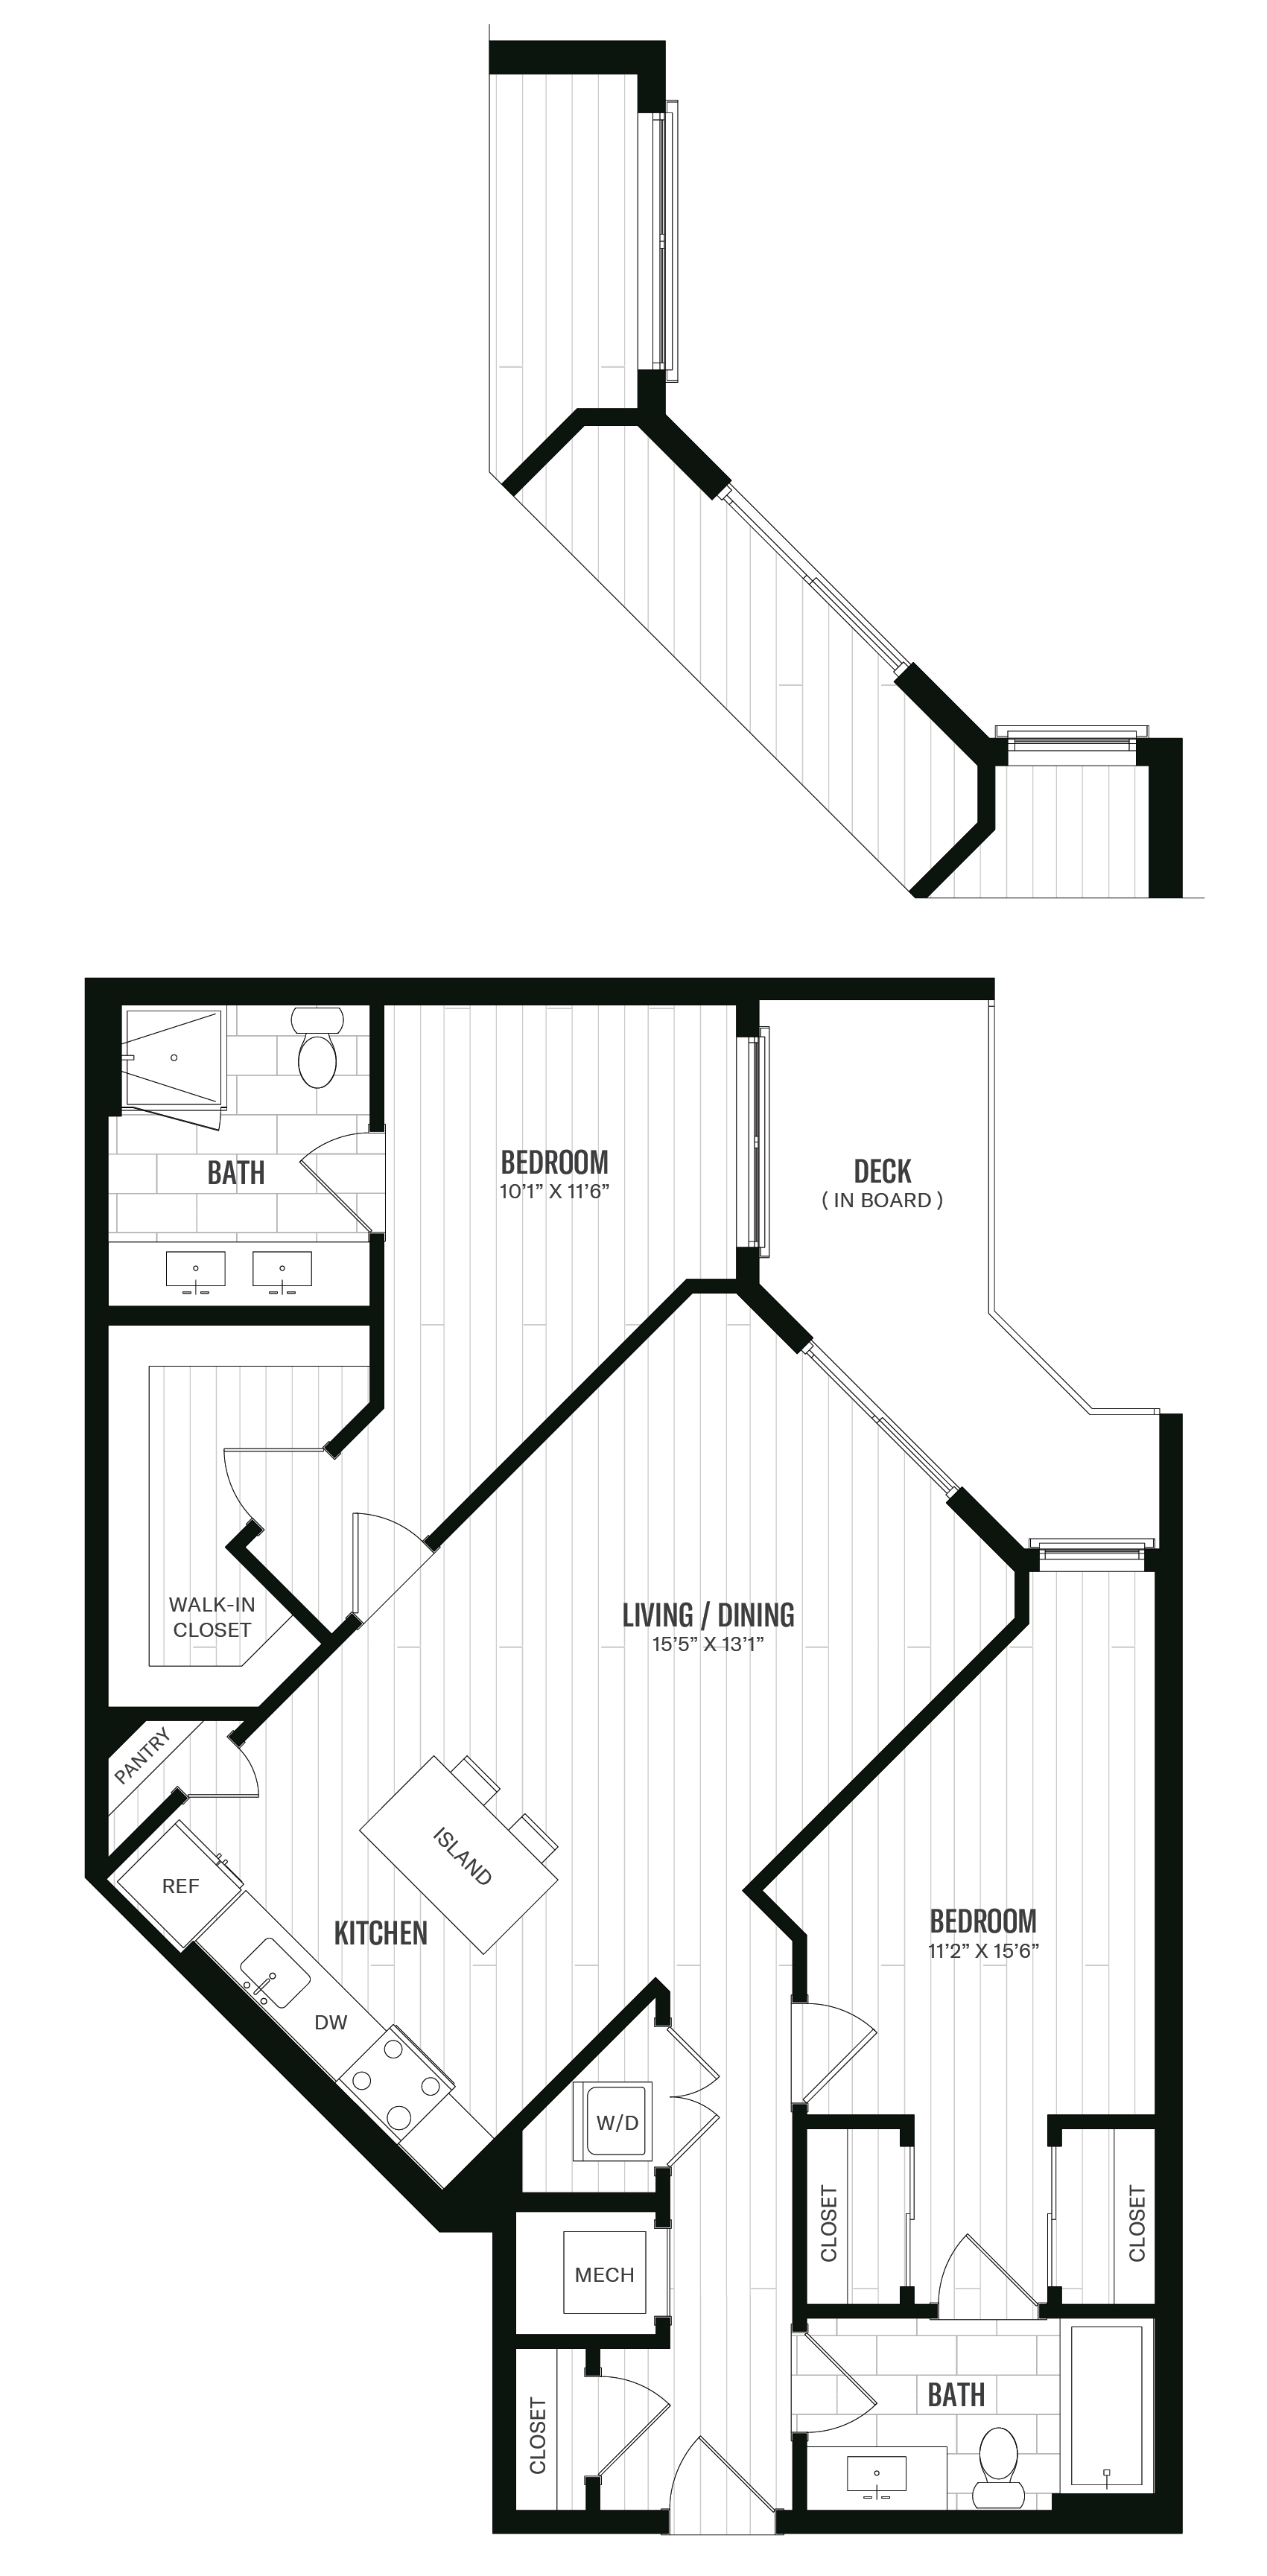 Floorplan image of unit 637